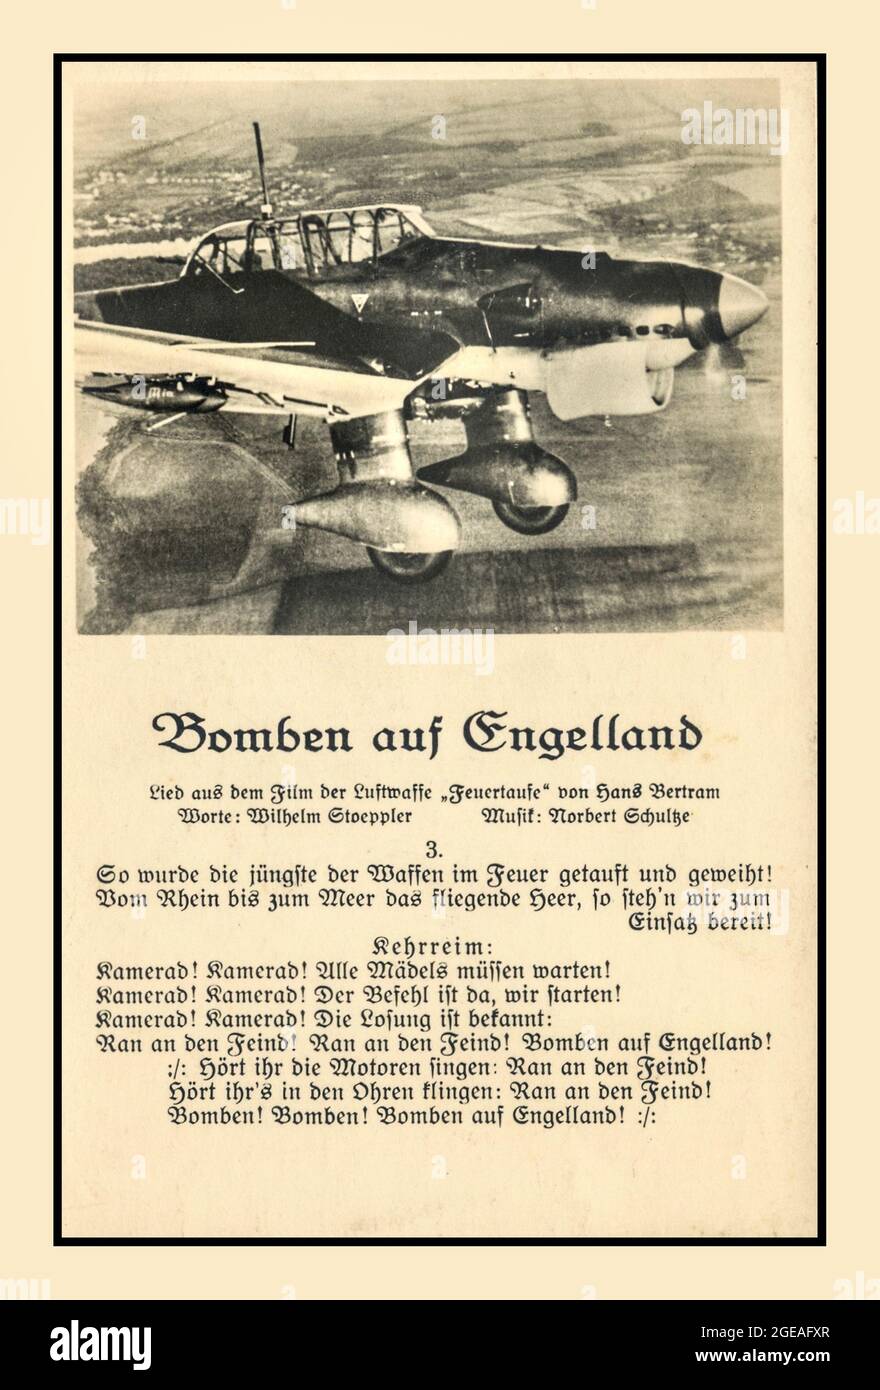 STUKA BOMBARDIER WW2 nazi anti anglais Angleterre propagande appel aux paroles de chansons d'armes avec un avion de plongée Luftwaffe Stuka Allemagne nazie. Chanson intitulée ' Bomben auf Engelland ' Seconde Guerre mondiale Banque D'Images